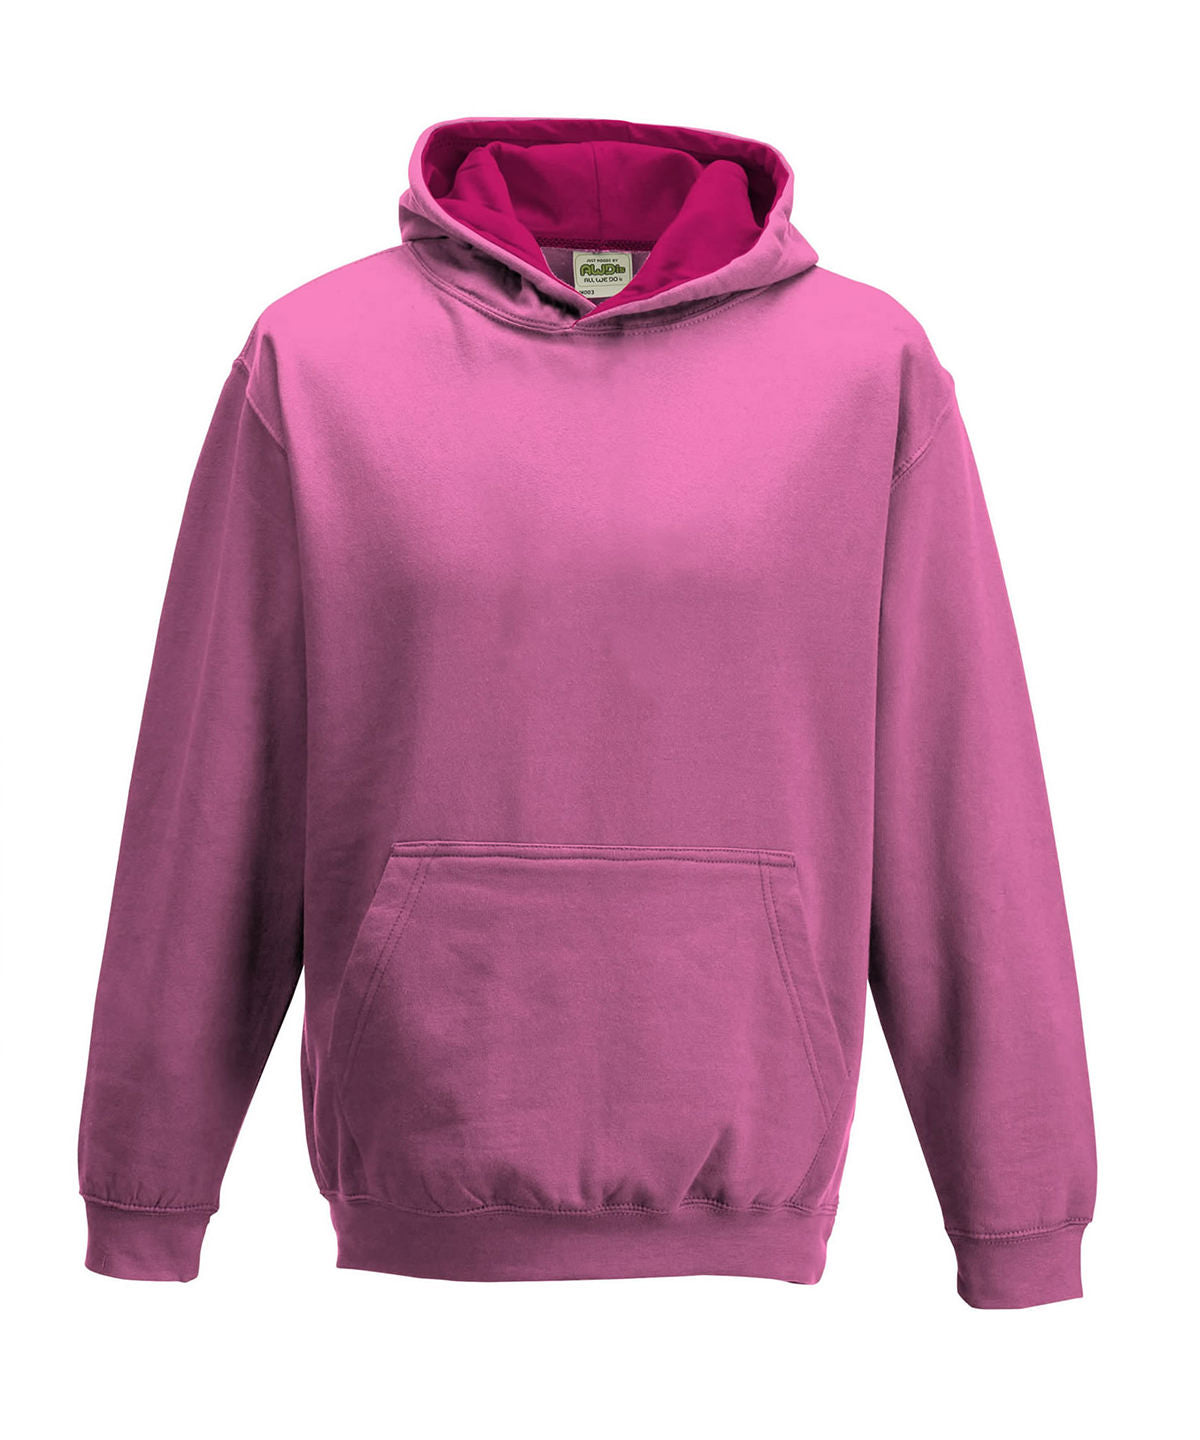 Personalised Hoodies - Light Pink AWDis Just Hoods Kids varsity hoodie